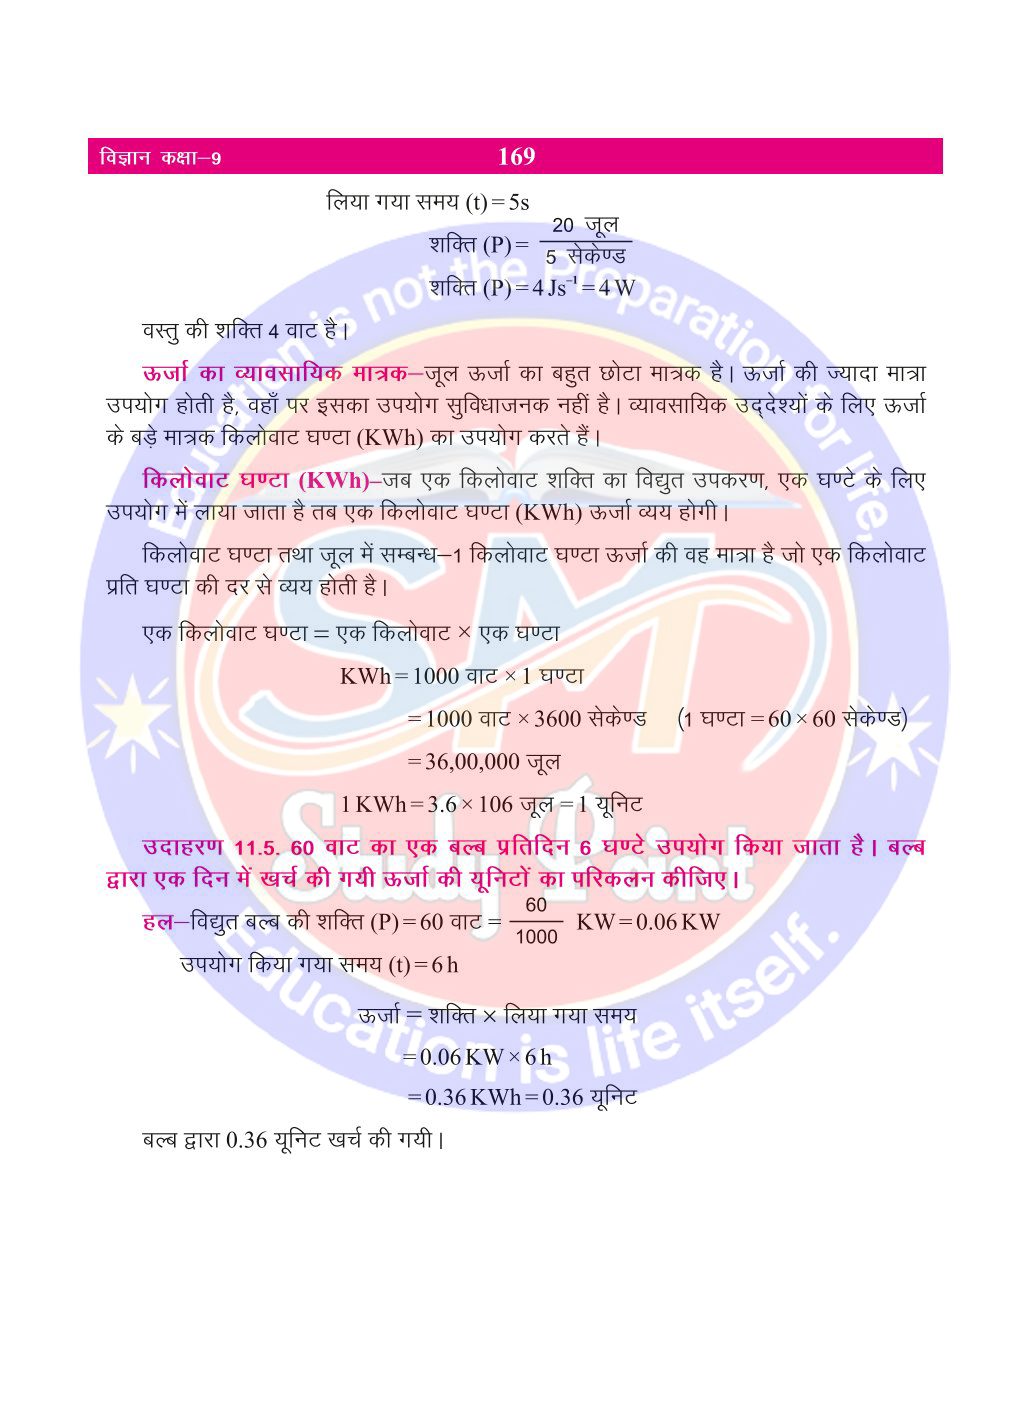 Bihar Board Class 9th Physics | Work and Energy | Class 9 Physics Rivision Notes PDF | कार्य तथा ऊर्जा | बिहार बोर्ड क्लास 9वीं भौतिकी नोट्स | कक्षा 9 भौतिकी हिंदी में नोट्स